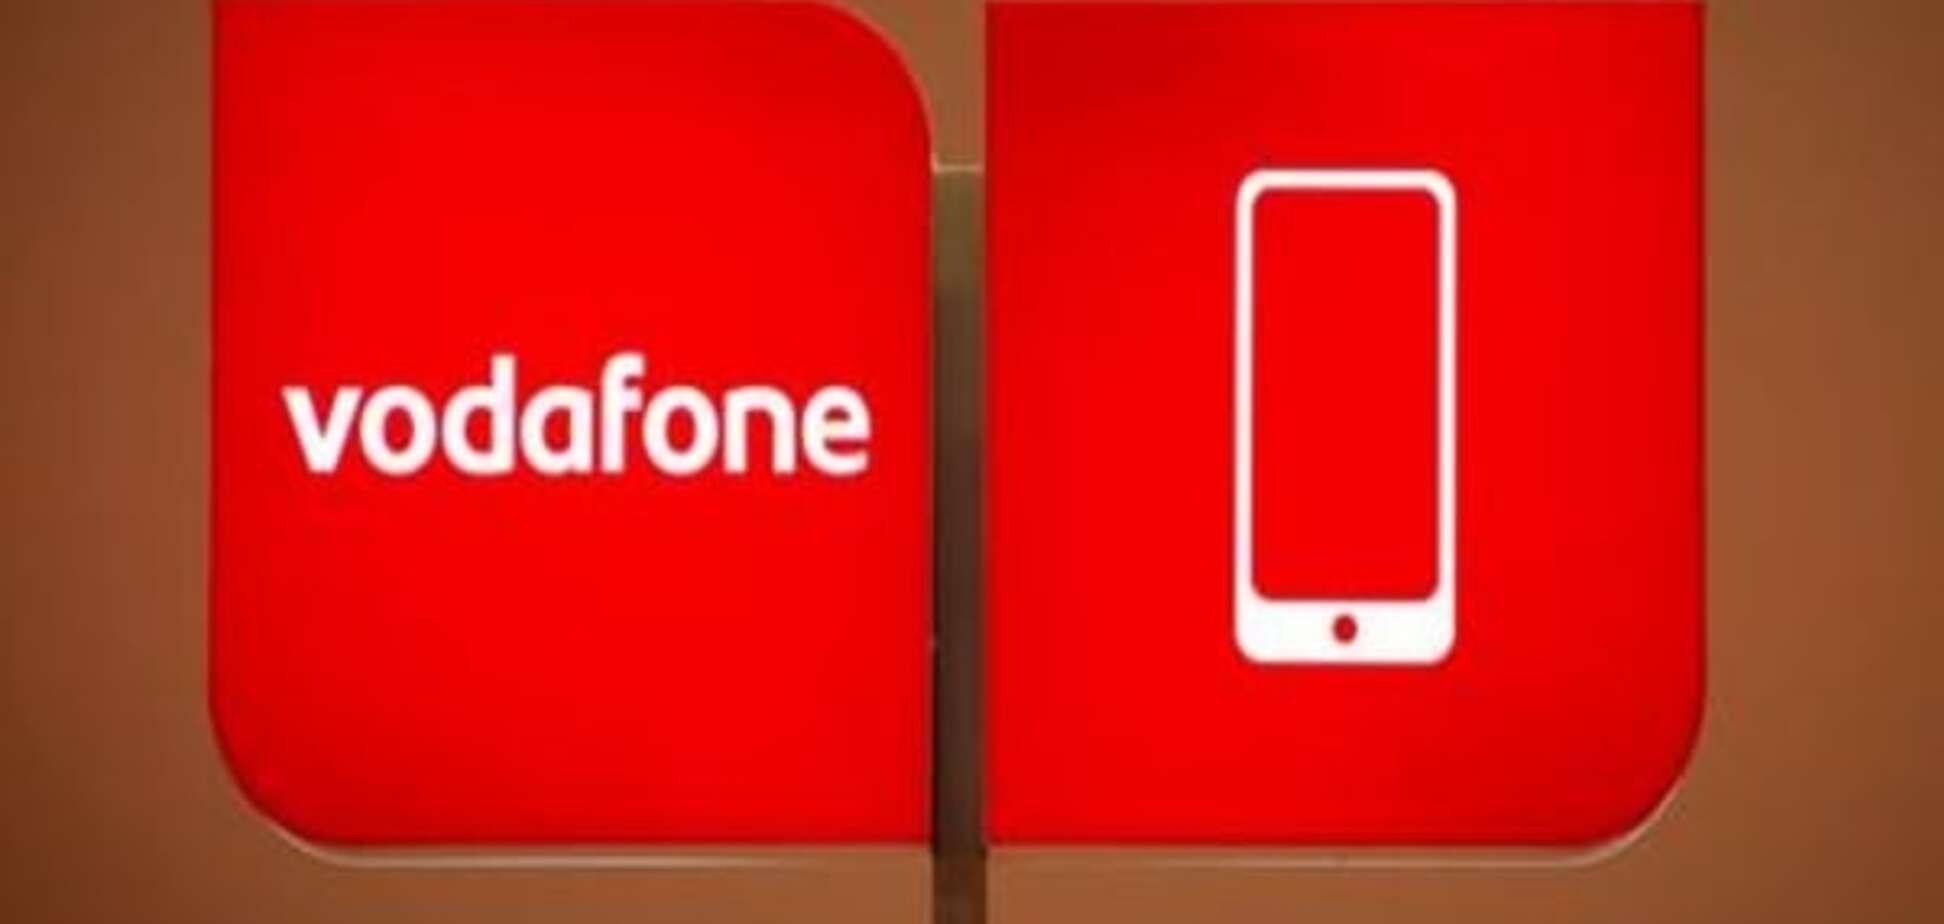 МТС працюватиме в Україні під брендом Vodafone